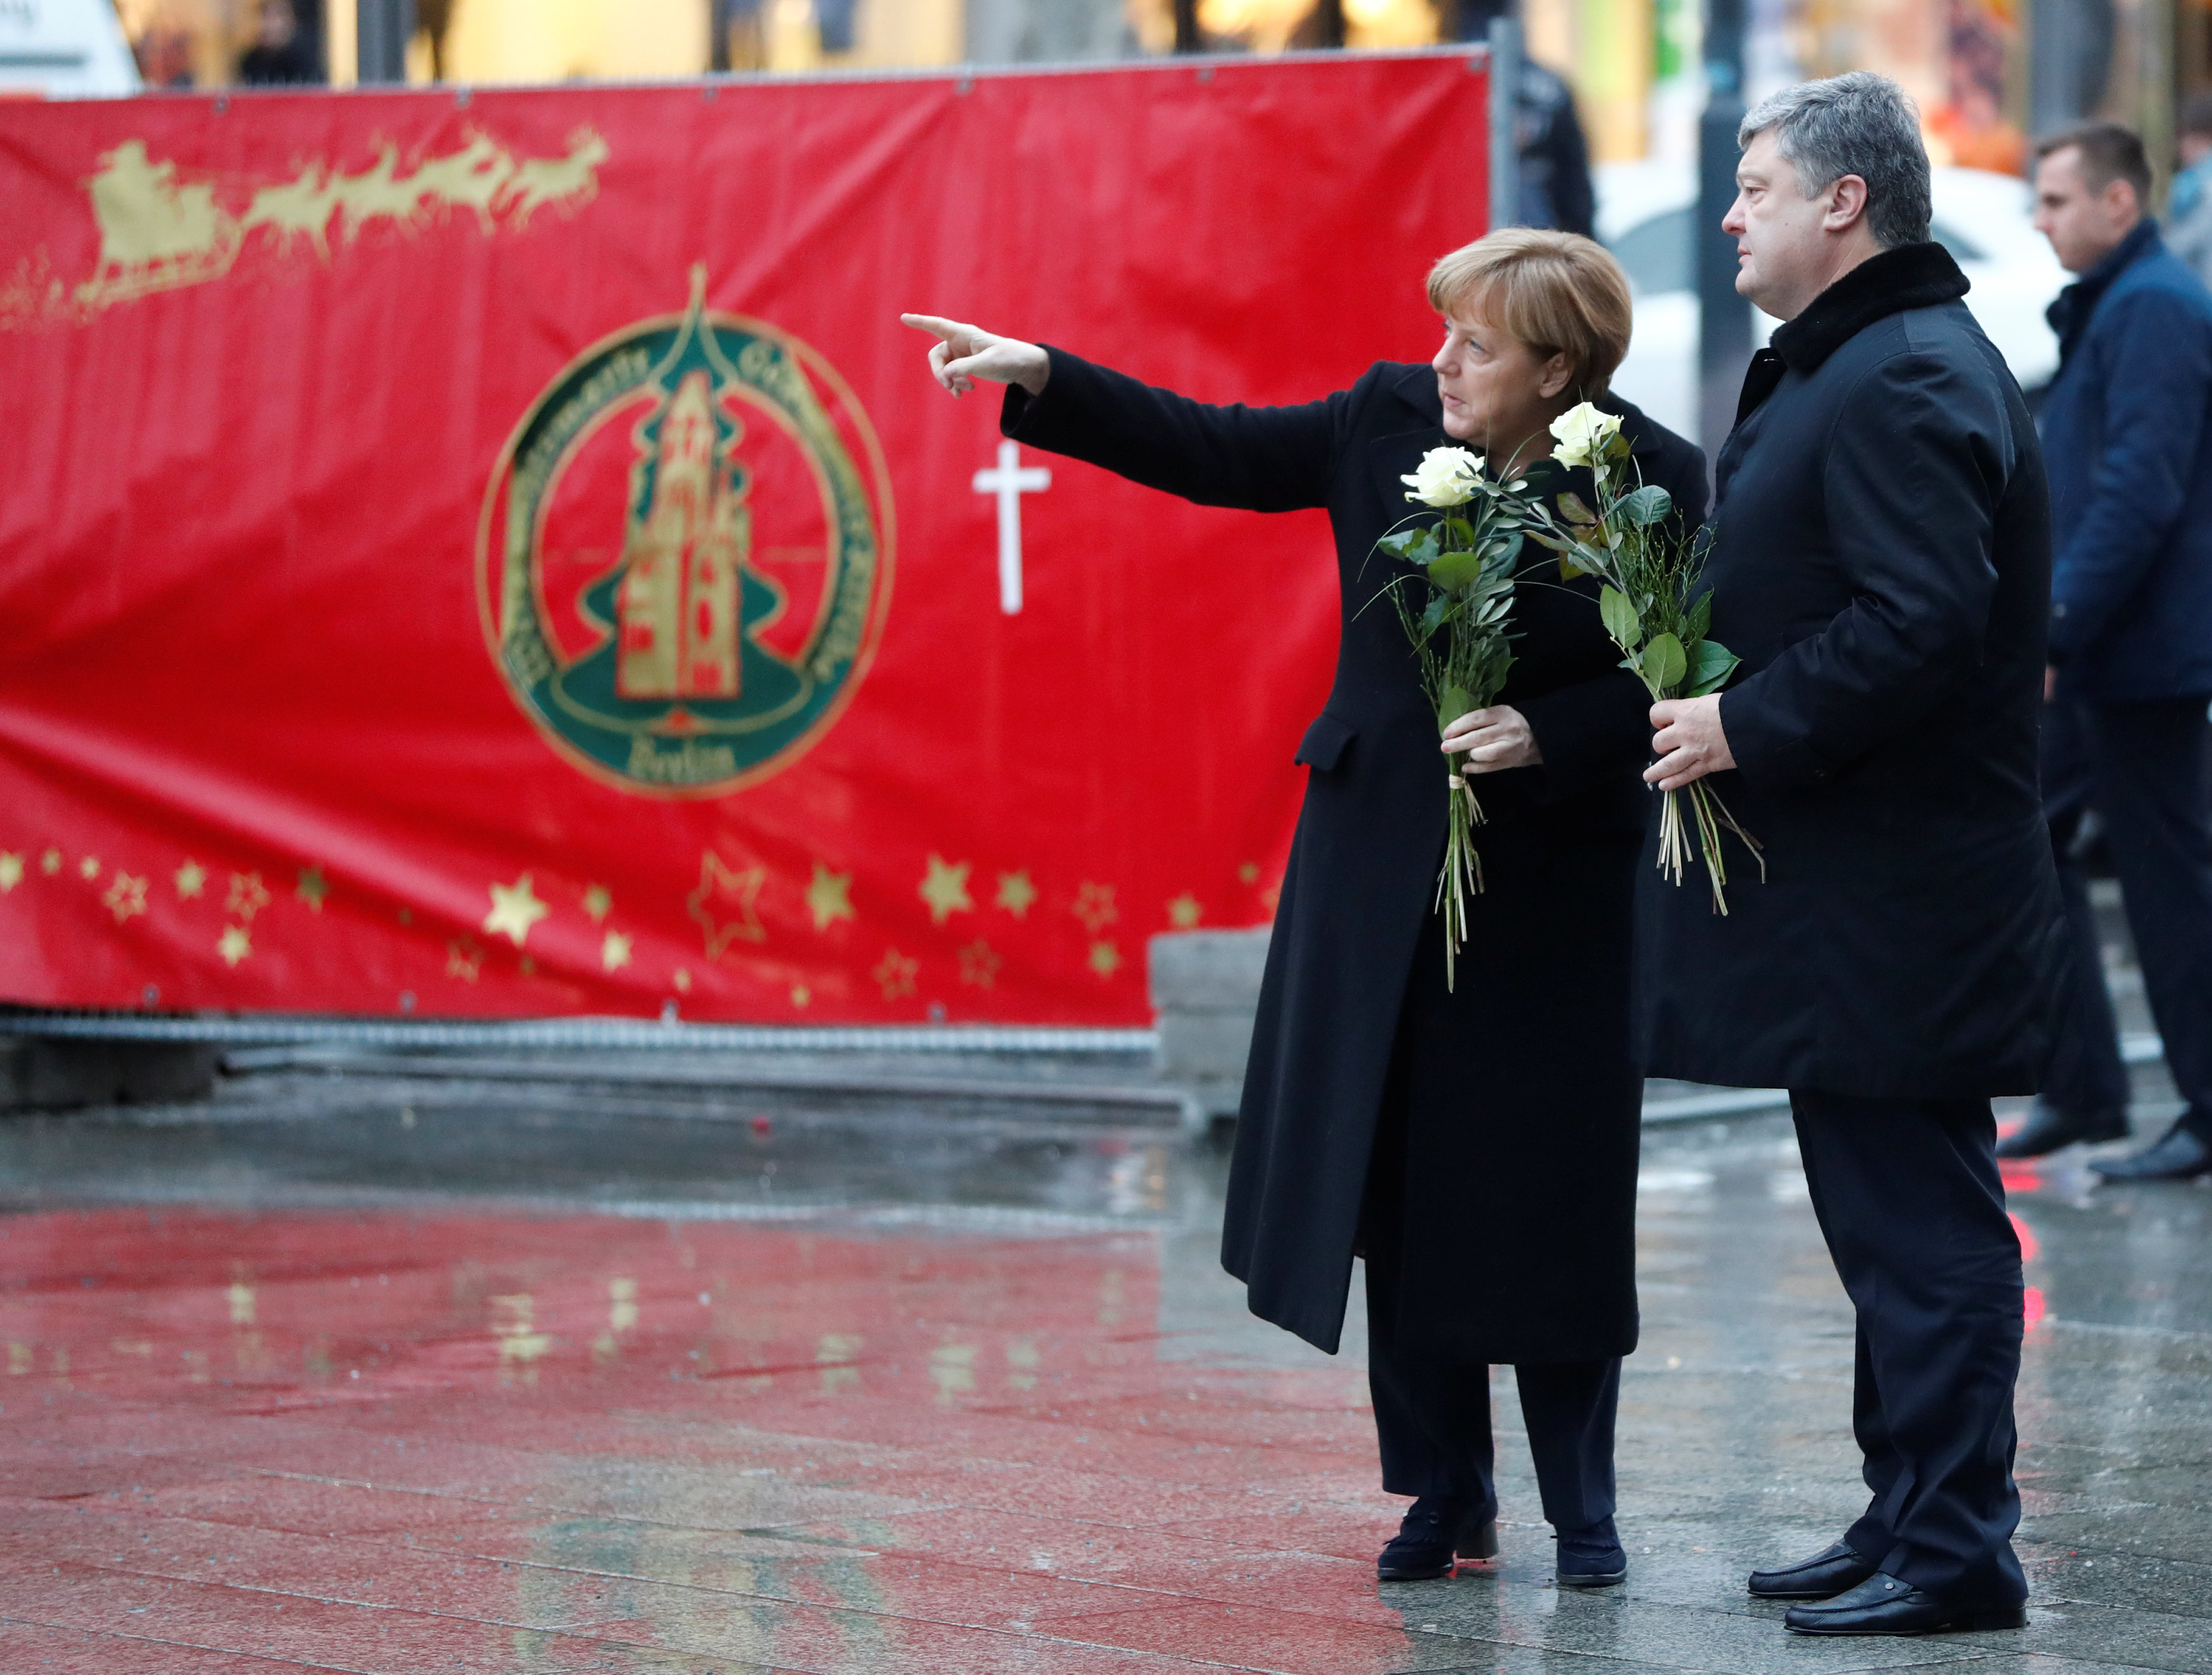 حديث بين ميركل جوالرئيس الأوكرانى خلال زيارتهما ساحة برلين